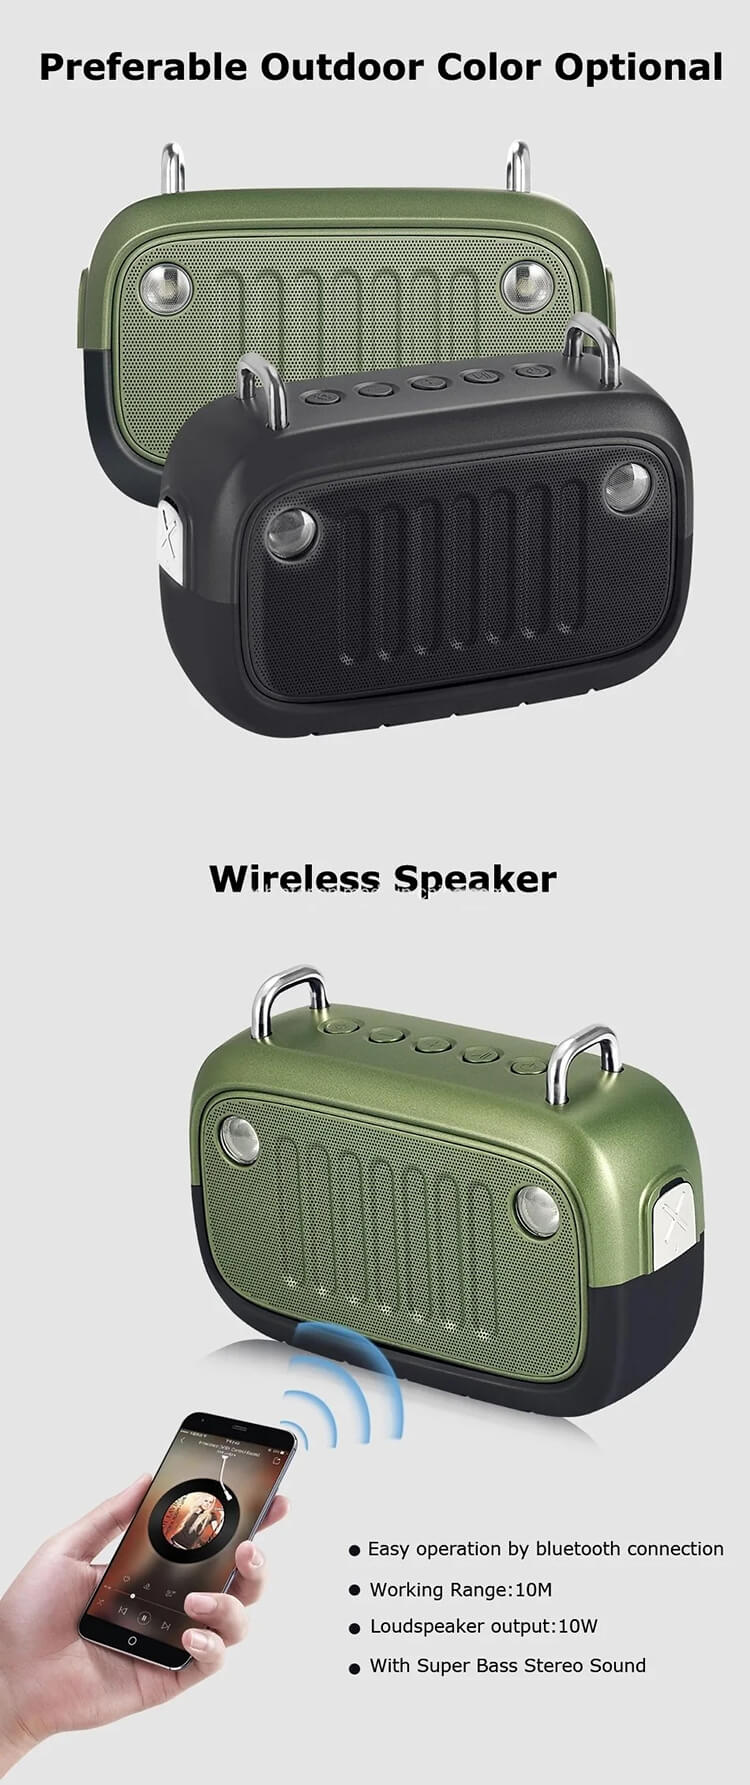 Portable-Waterproof-Shower-Karaoke-System-Water-Proof-Outdoor-Wireless-Bluetooth-Speaker.webp (2).jpg